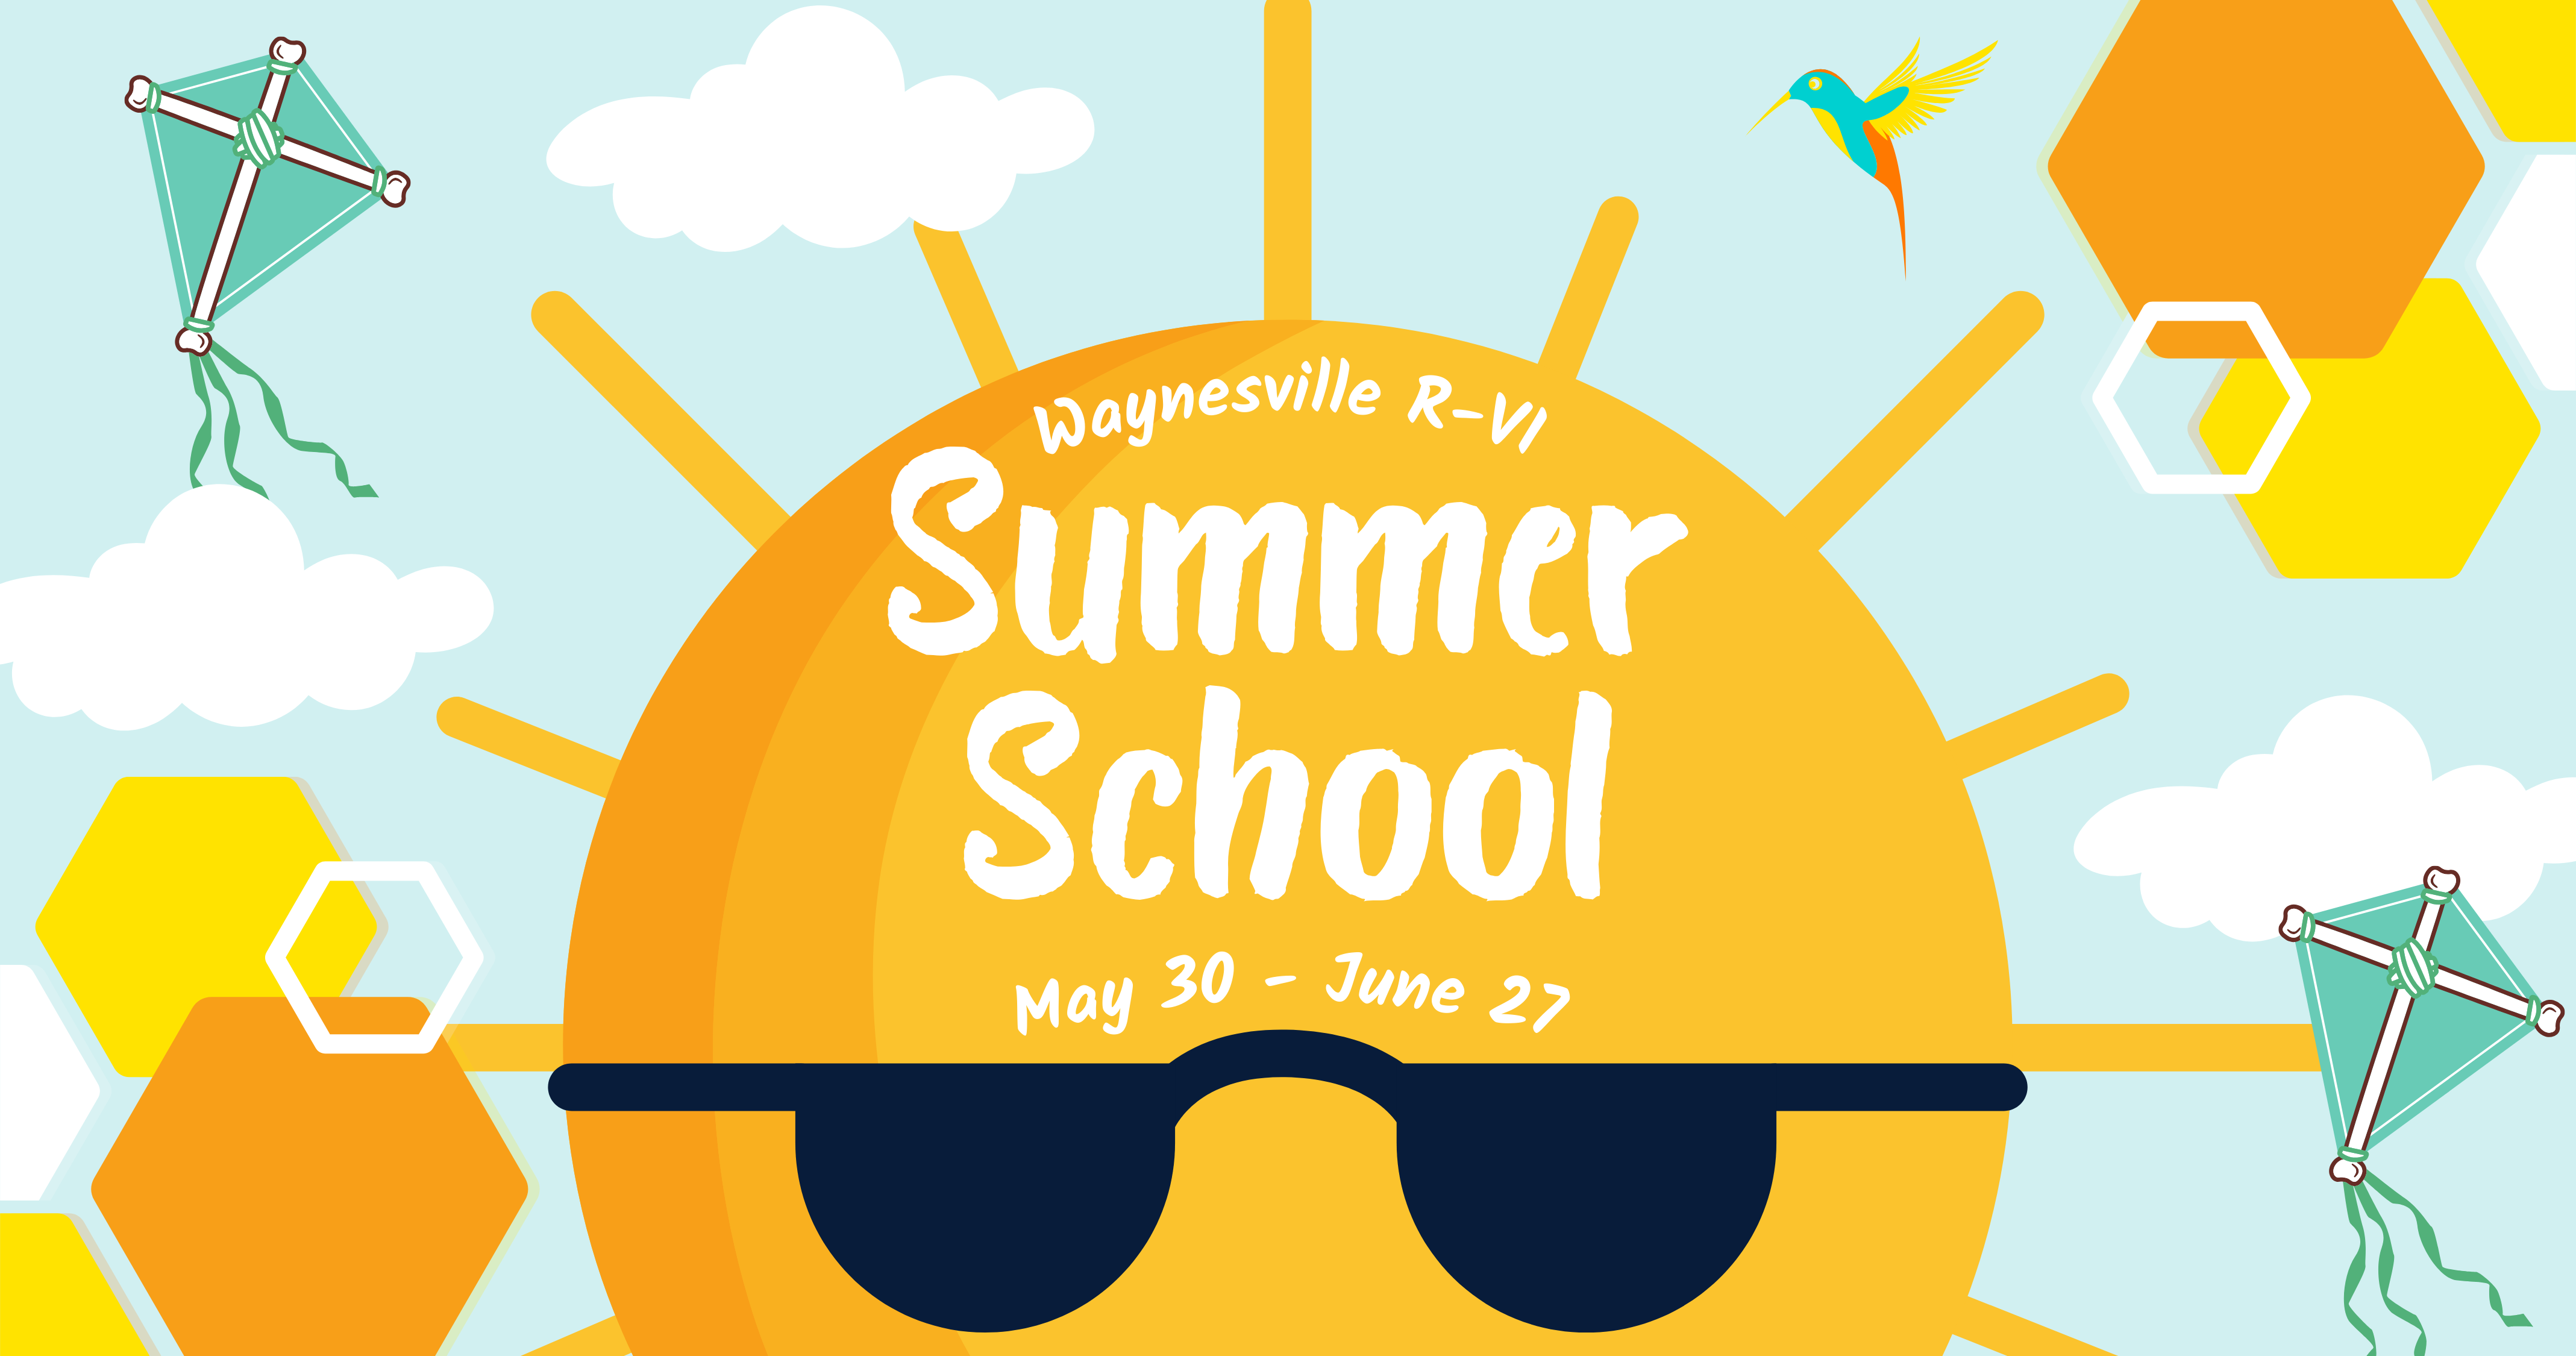 Summer School will be May 30-June 27